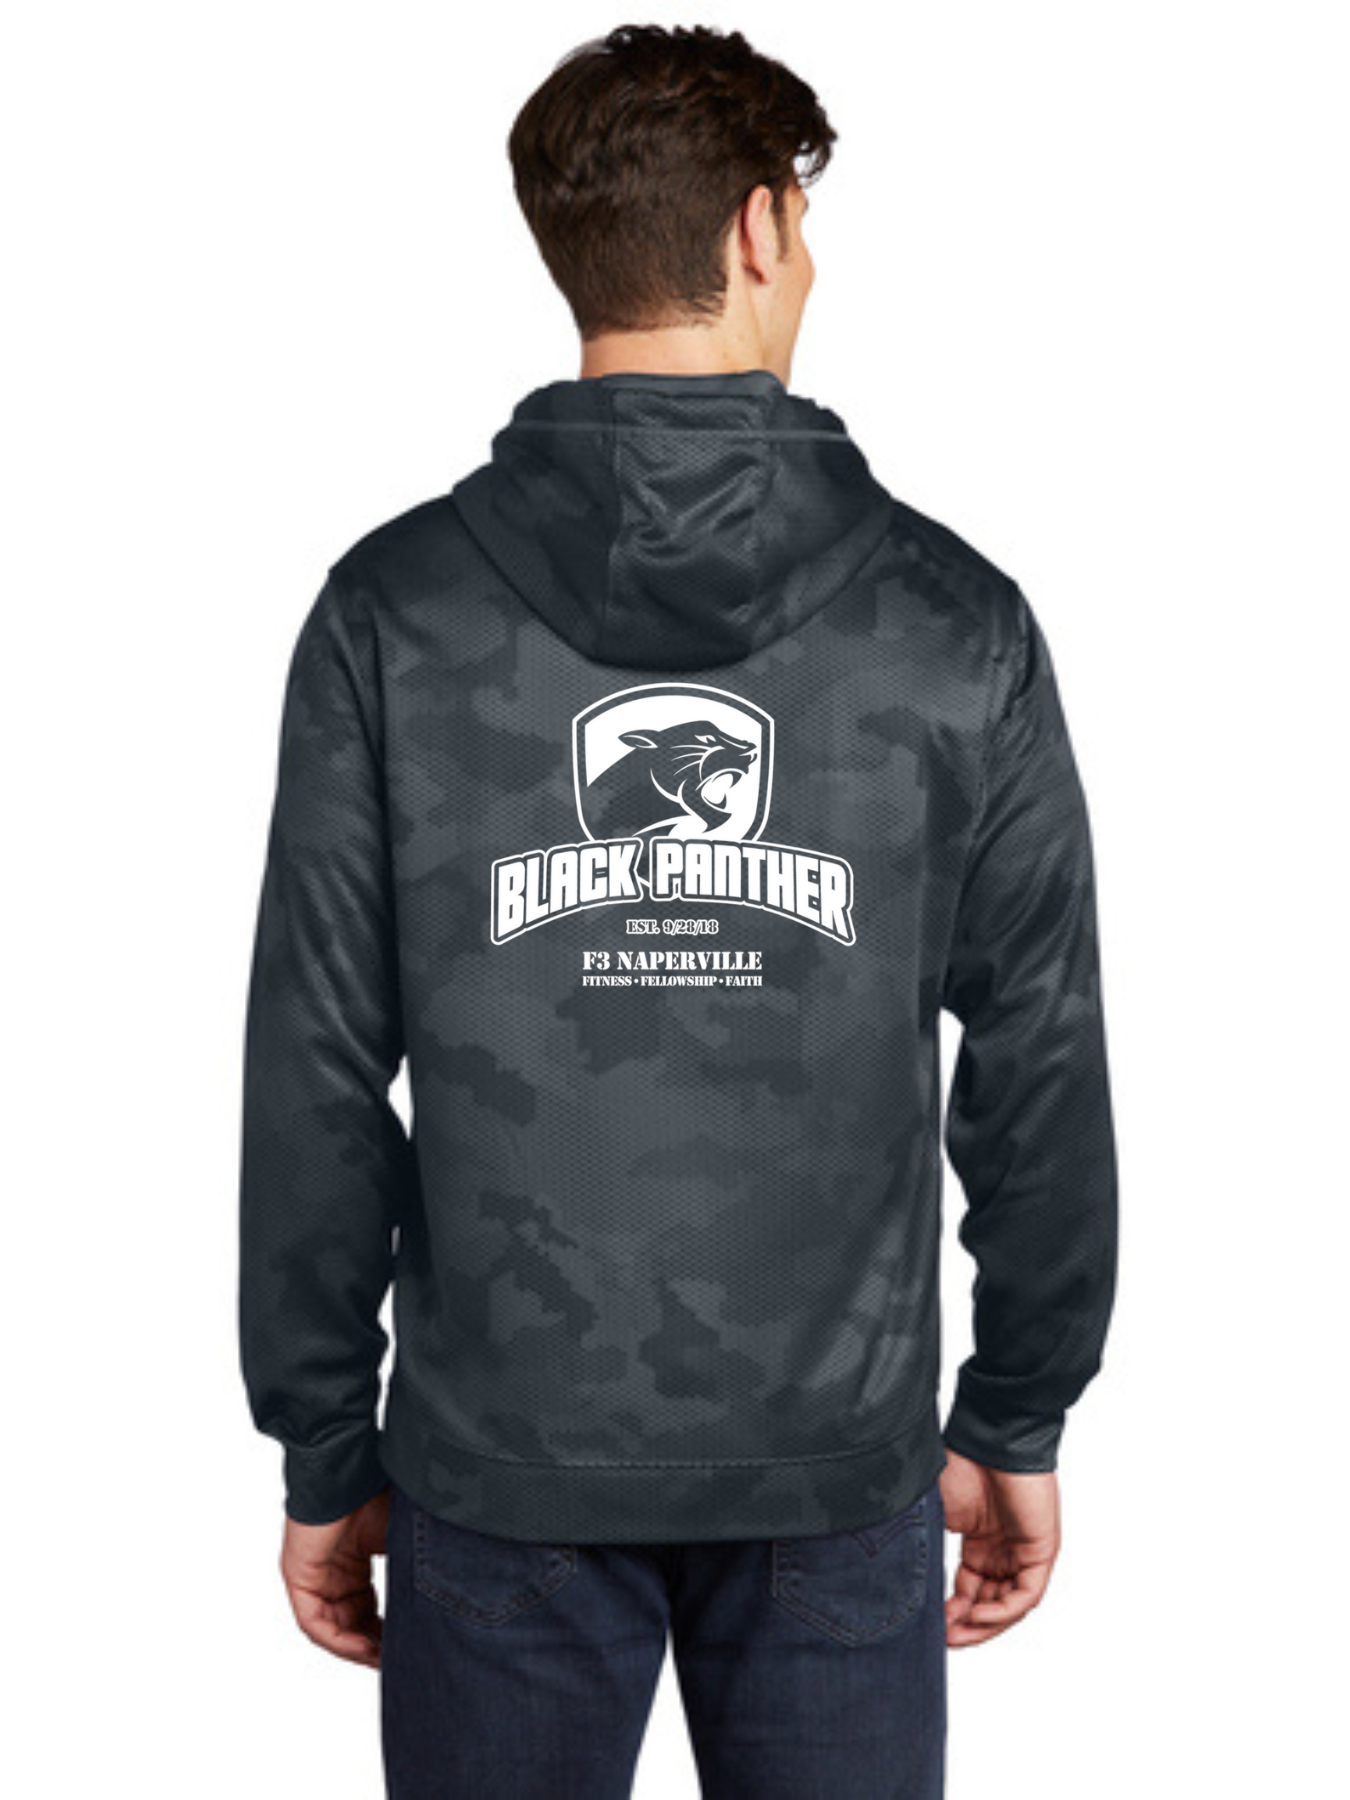 F3 Naperville Black Panther Pre-Order October 2022